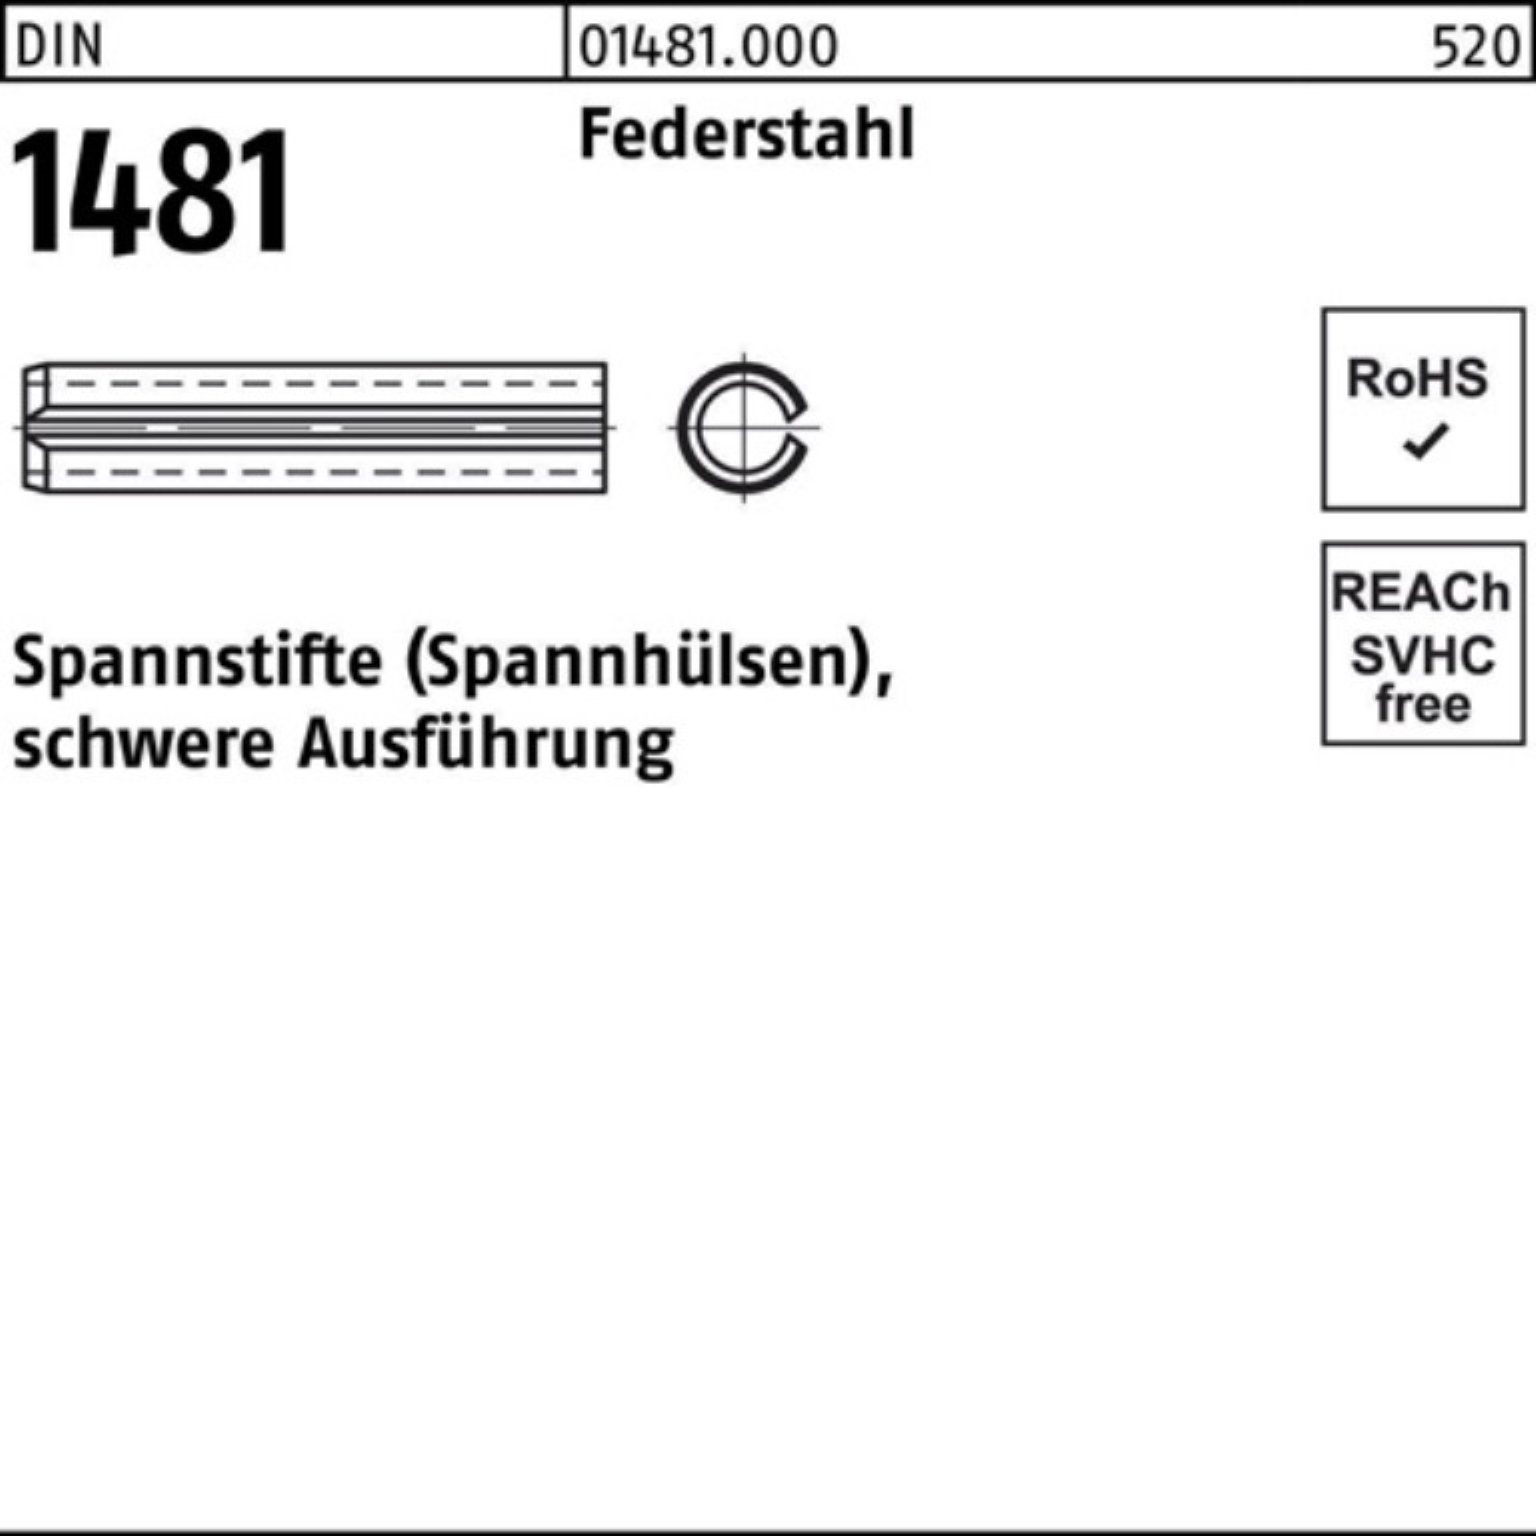 Spannstift 1481 DIN 1000er 5 Ausführung Pack Spannstift 1,5x Reyher Federstahl schwere